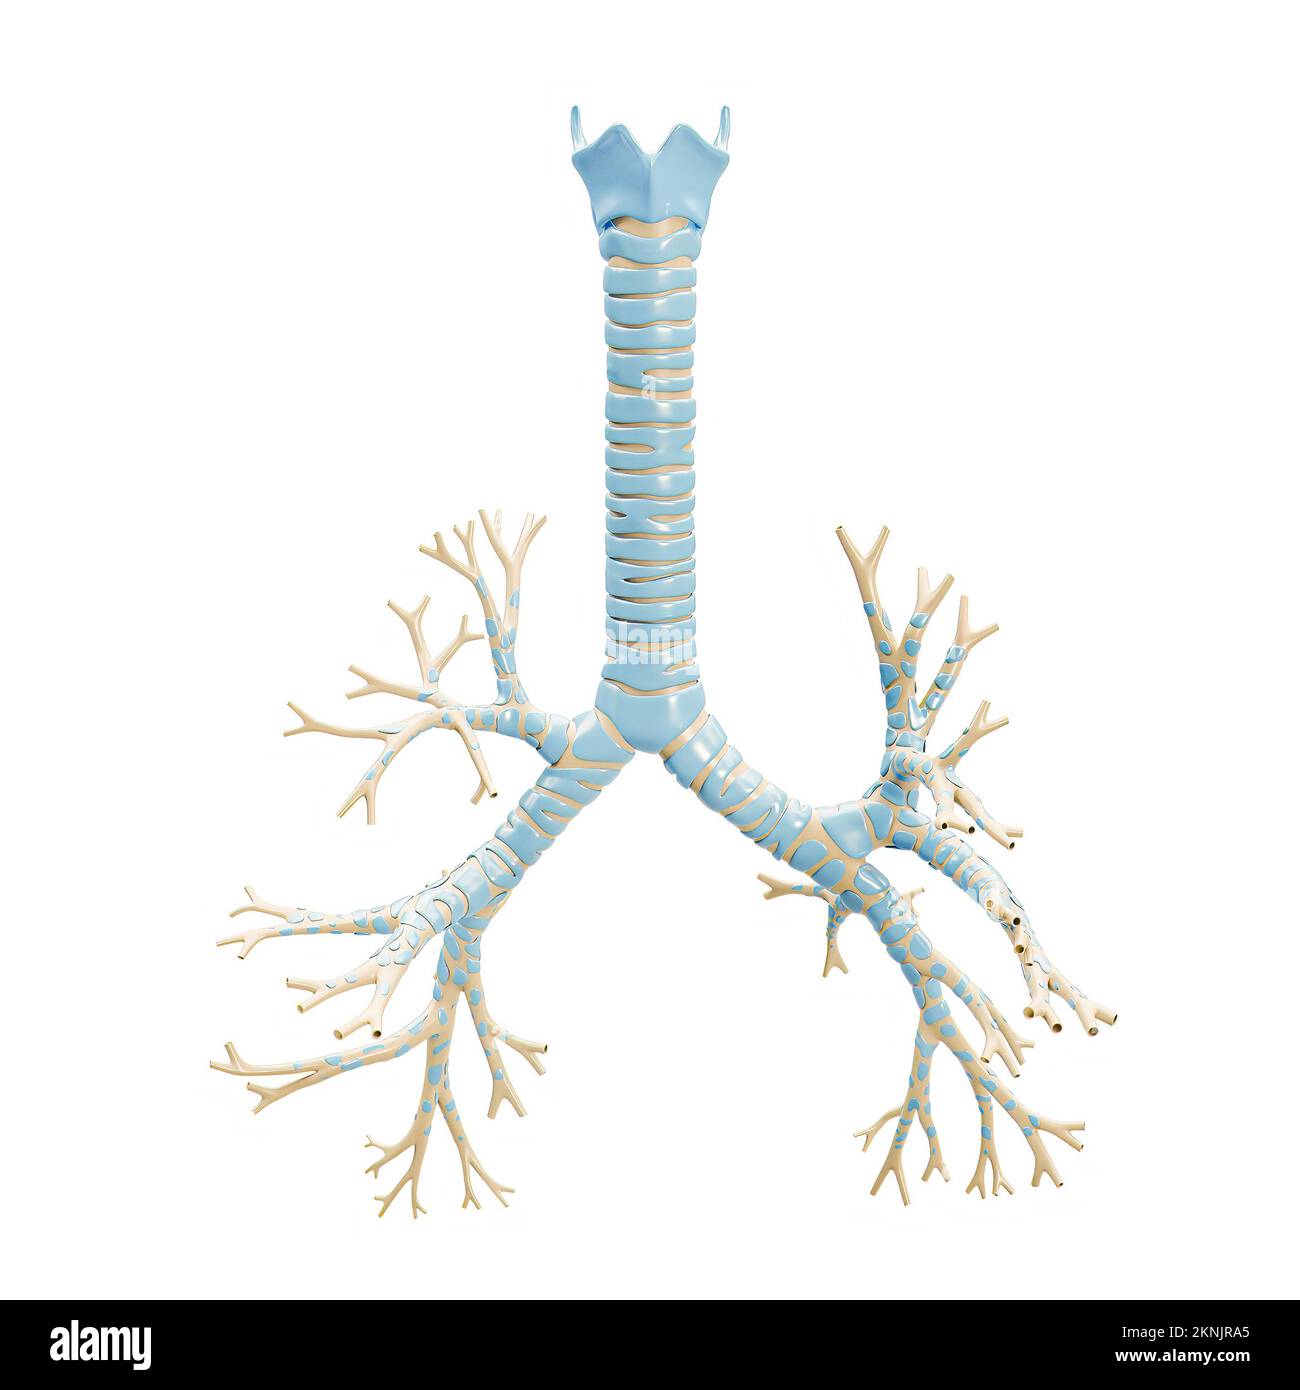 Albero bronchiale accurato con trachea e cartilagine tiroidea 3D, rappresentazione su sfondo bianco. Diagramma anatomico vuoto o grafico del bro Foto Stock